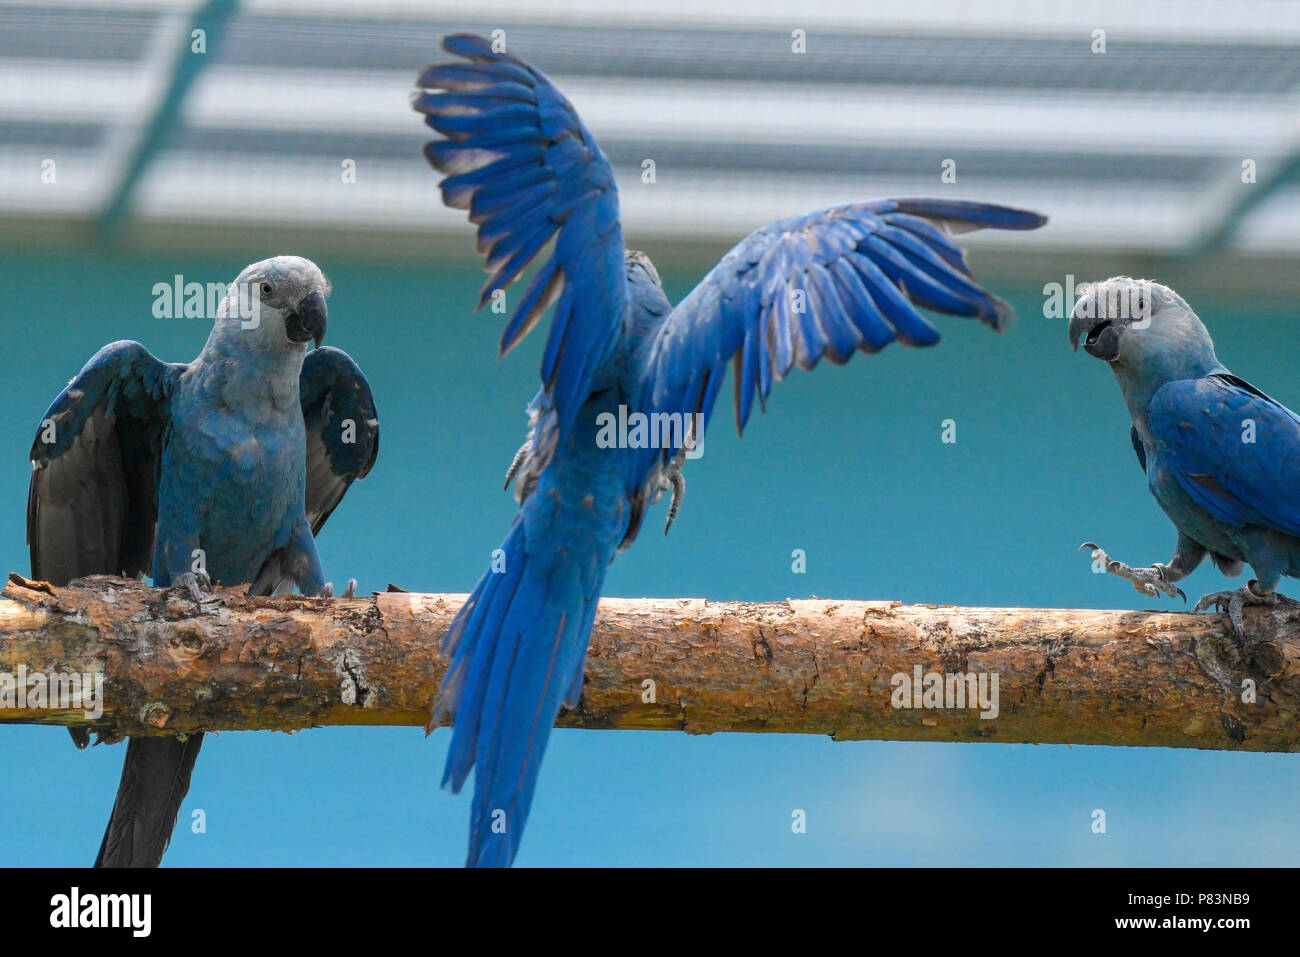 28 juin 2018, l'Allemagne, l'Schoeneiche : délibérément produites Spix Ara on peut voir les oiseaux à la station génétique de la conservation de la nature Organisation Association pour la conservation des perroquets menacés e.V. (PTCA). Ministre de l'environnement du Brésil Duarte est d'ouvrir l'établissement pour la réinstallation du PTCA Spix Aras. Le Spix-Ara Cyanopsitta spixii (bleu) est un type de perroquet, qui est originaire du Rio Sao Francisco (Bahia, Brésil) et a été éteint à l'état sauvage depuis l'année 2000. Les gouvernements et le secteur privé à but non lucratif se sont regroupés pour aider à sauver cette espèce d'être complet Banque D'Images